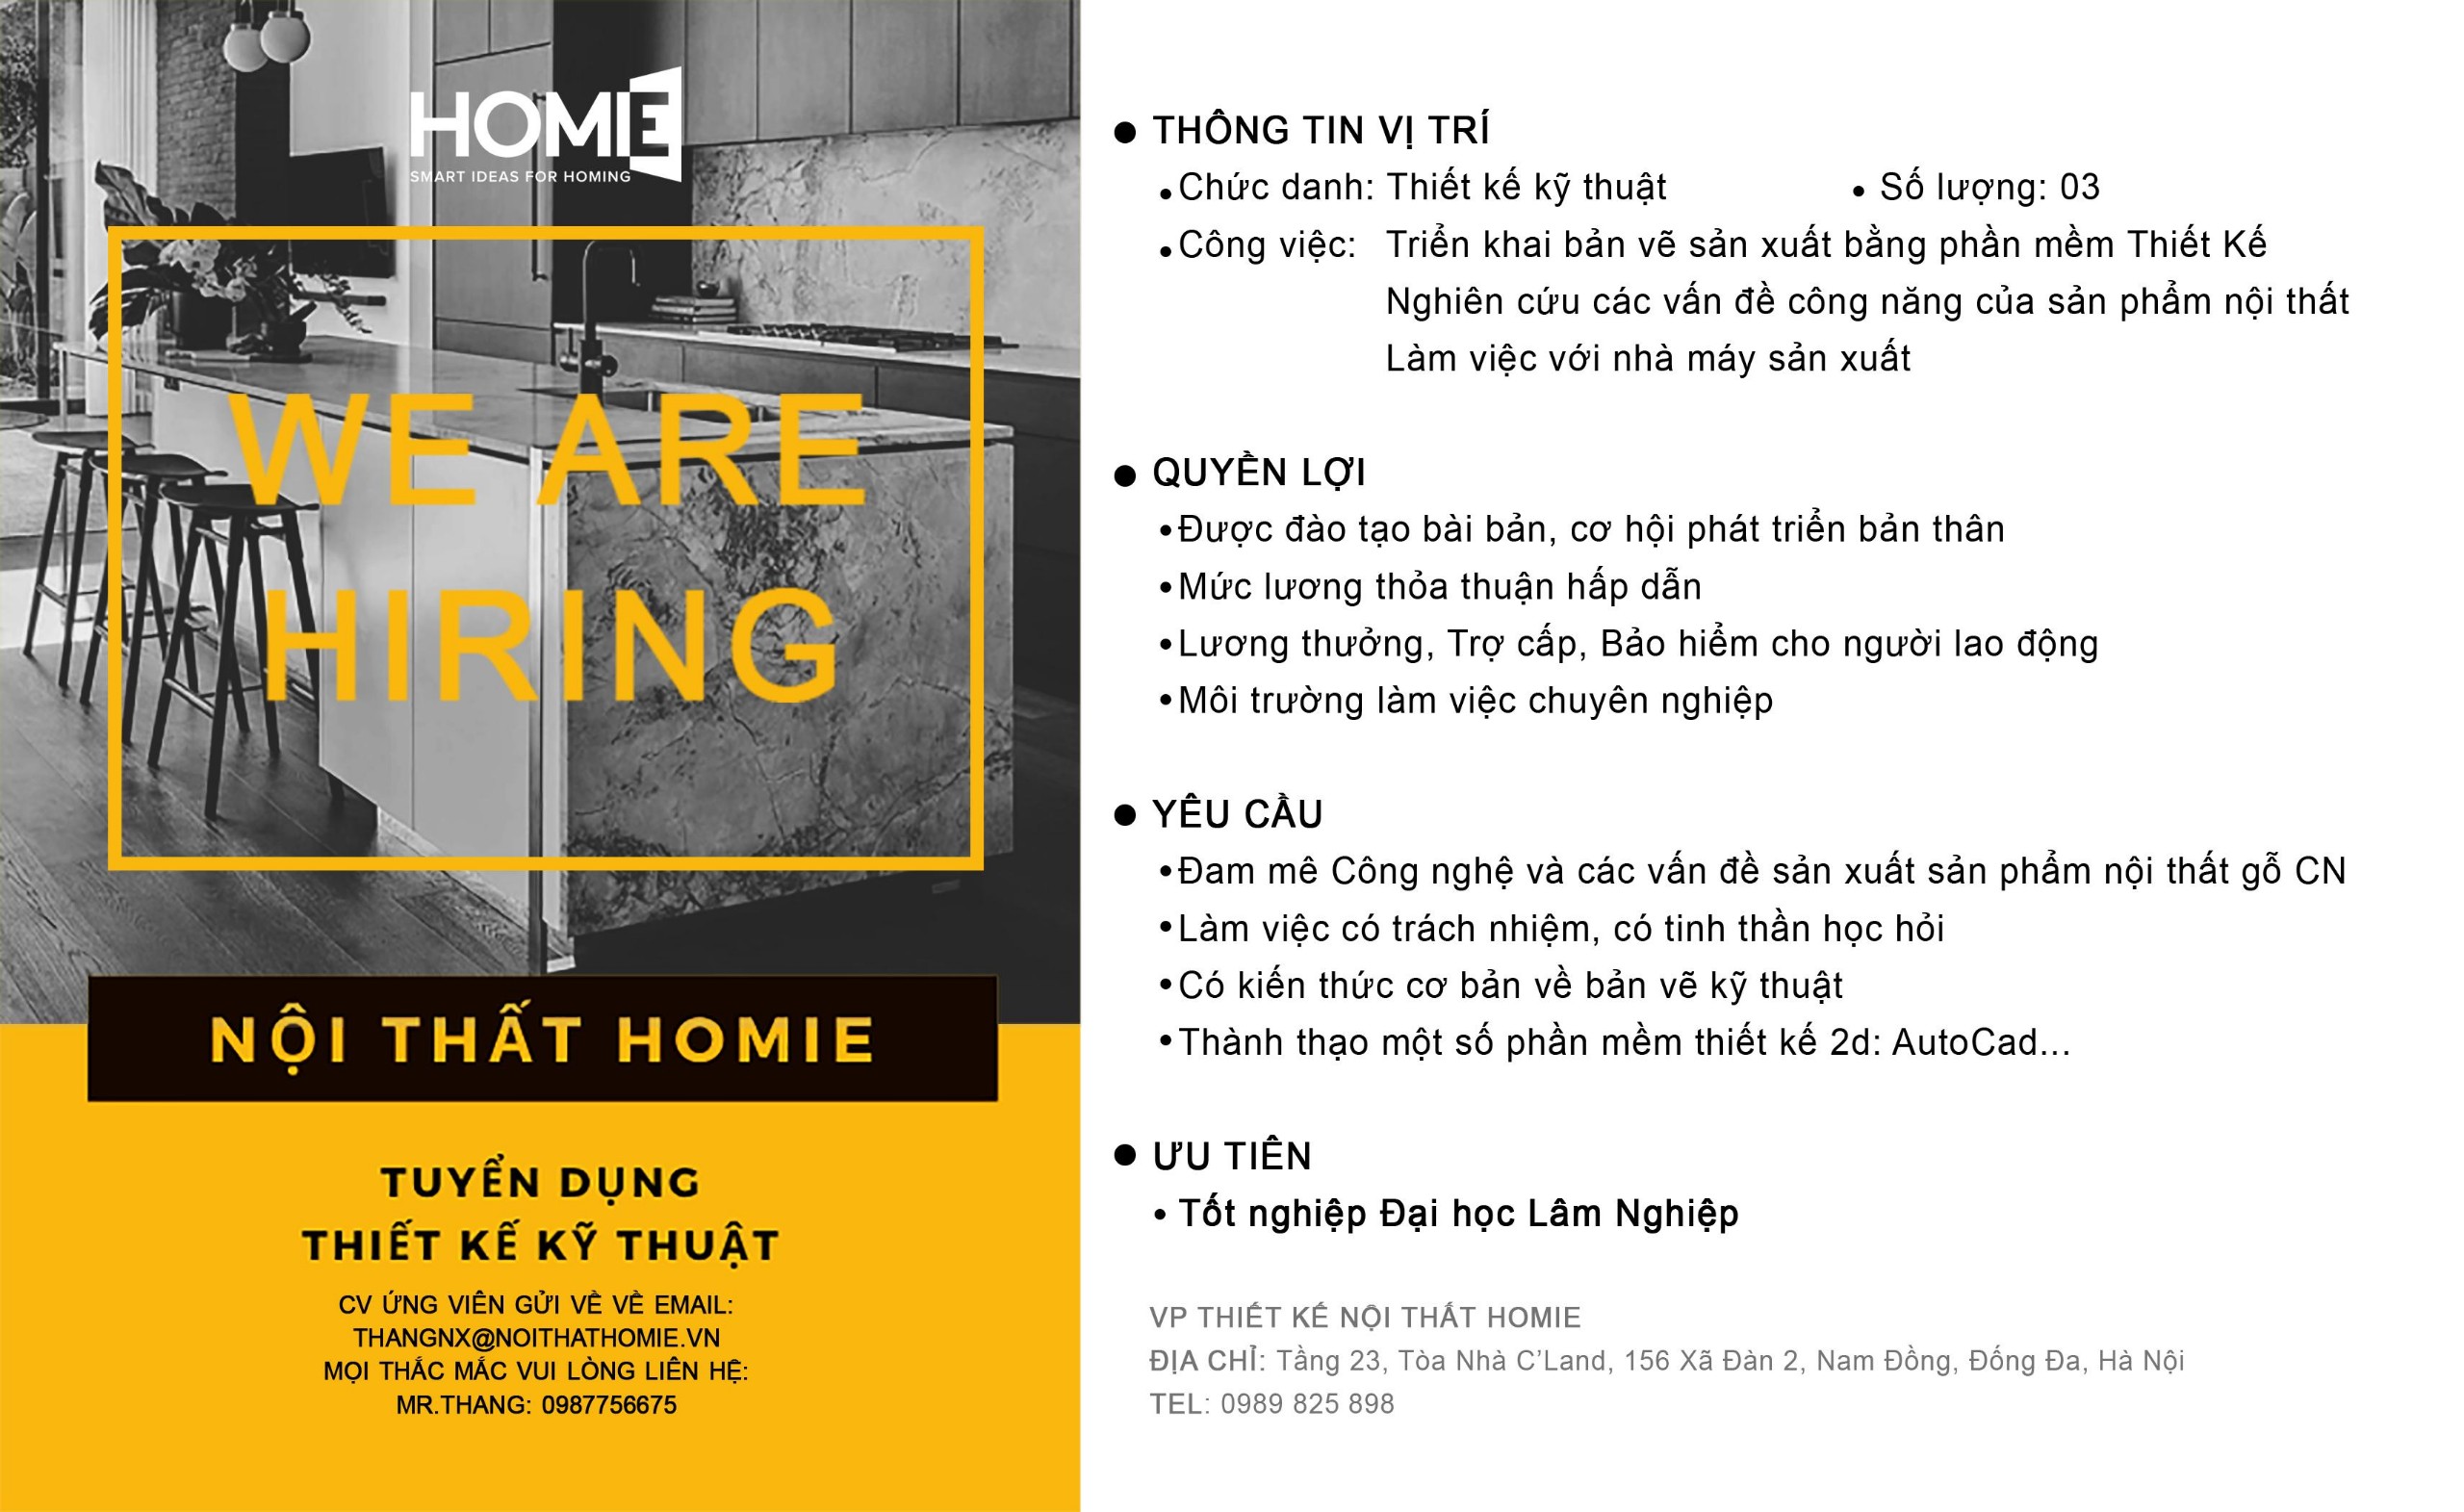 Công ty nội thất HOMIE: Với hơn 10 năm kinh nghiệm, công ty nội thất HOMIE là đơn vị hàng đầu trong lĩnh vực thiết kế và sản xuất nội thất tại Việt Nam. Chúng tôi cam kết mang lại cho khách hàng những sản phẩm đẹp và chất lượng nhất, đồng thời cung cấp dịch vụ hậu mãi tốt nhất để đảm bảo sự hài lòng cao nhất.